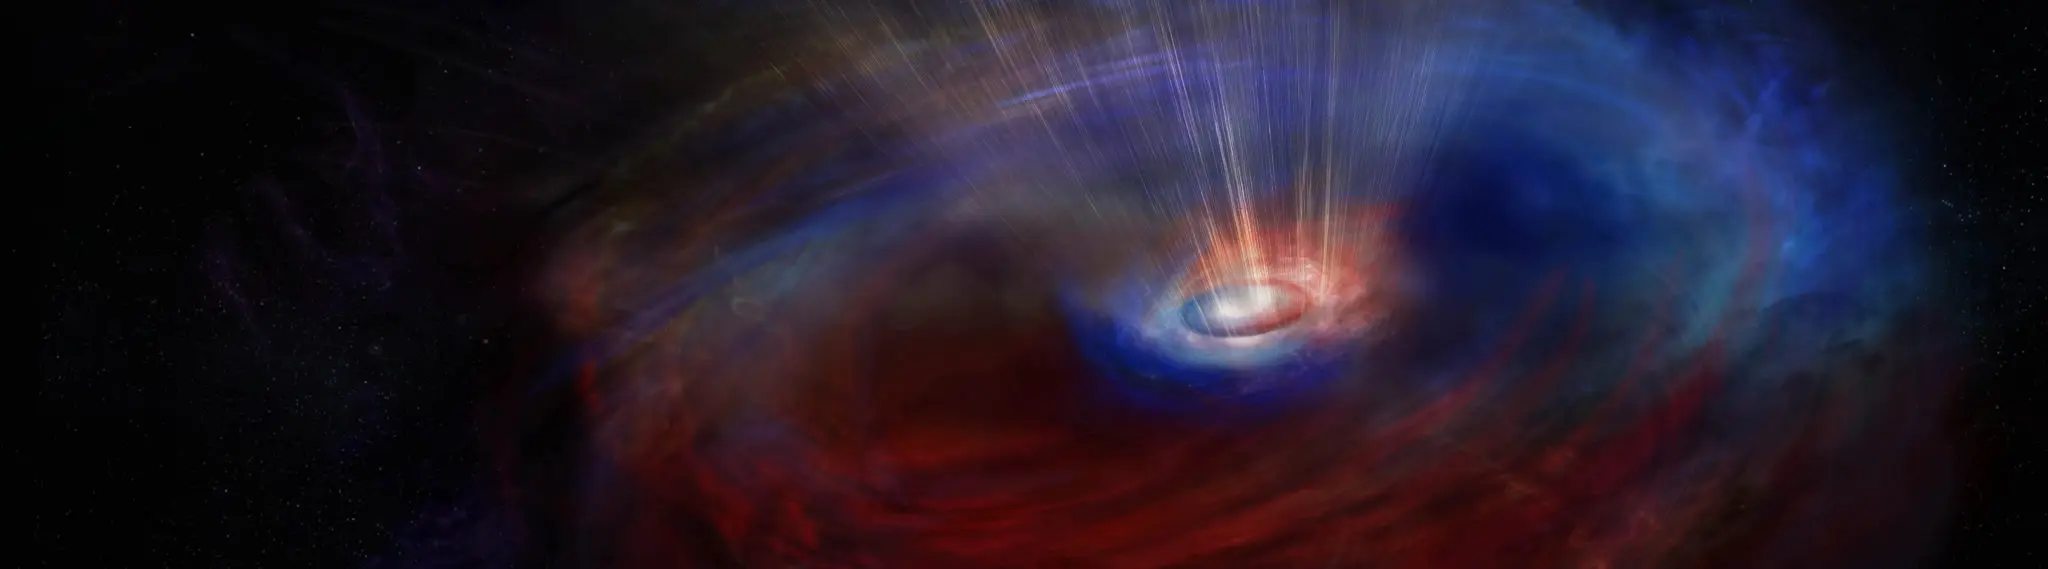 ブラックホールのまわりで、たがいちがいに回転するガスを発見 